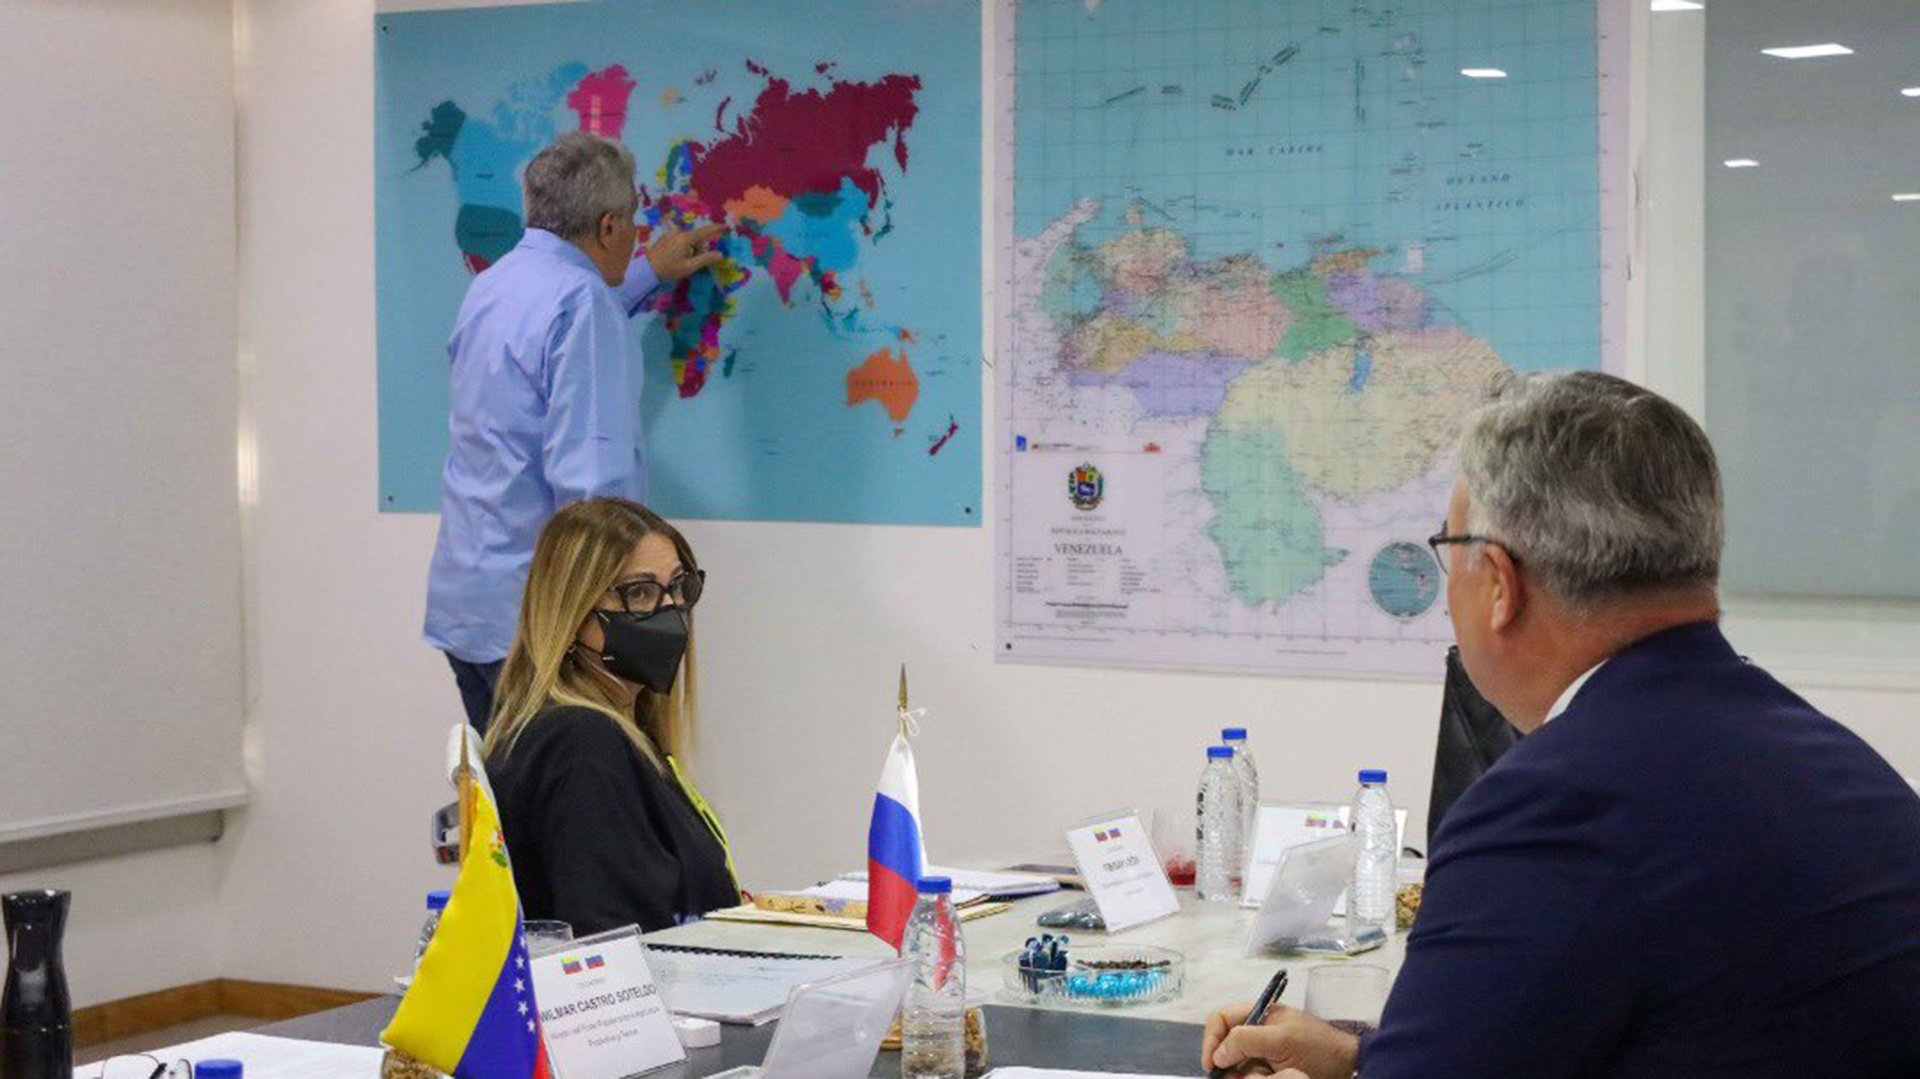 Este nuevo acercamiento llega luego de que el mes pasado Roscosmos, la agencia espacial rusa, anunciara que tienen previsto emplazar en el territorio de Venezuela una estación de medición de su sistema de navegación por satélite GLONASS